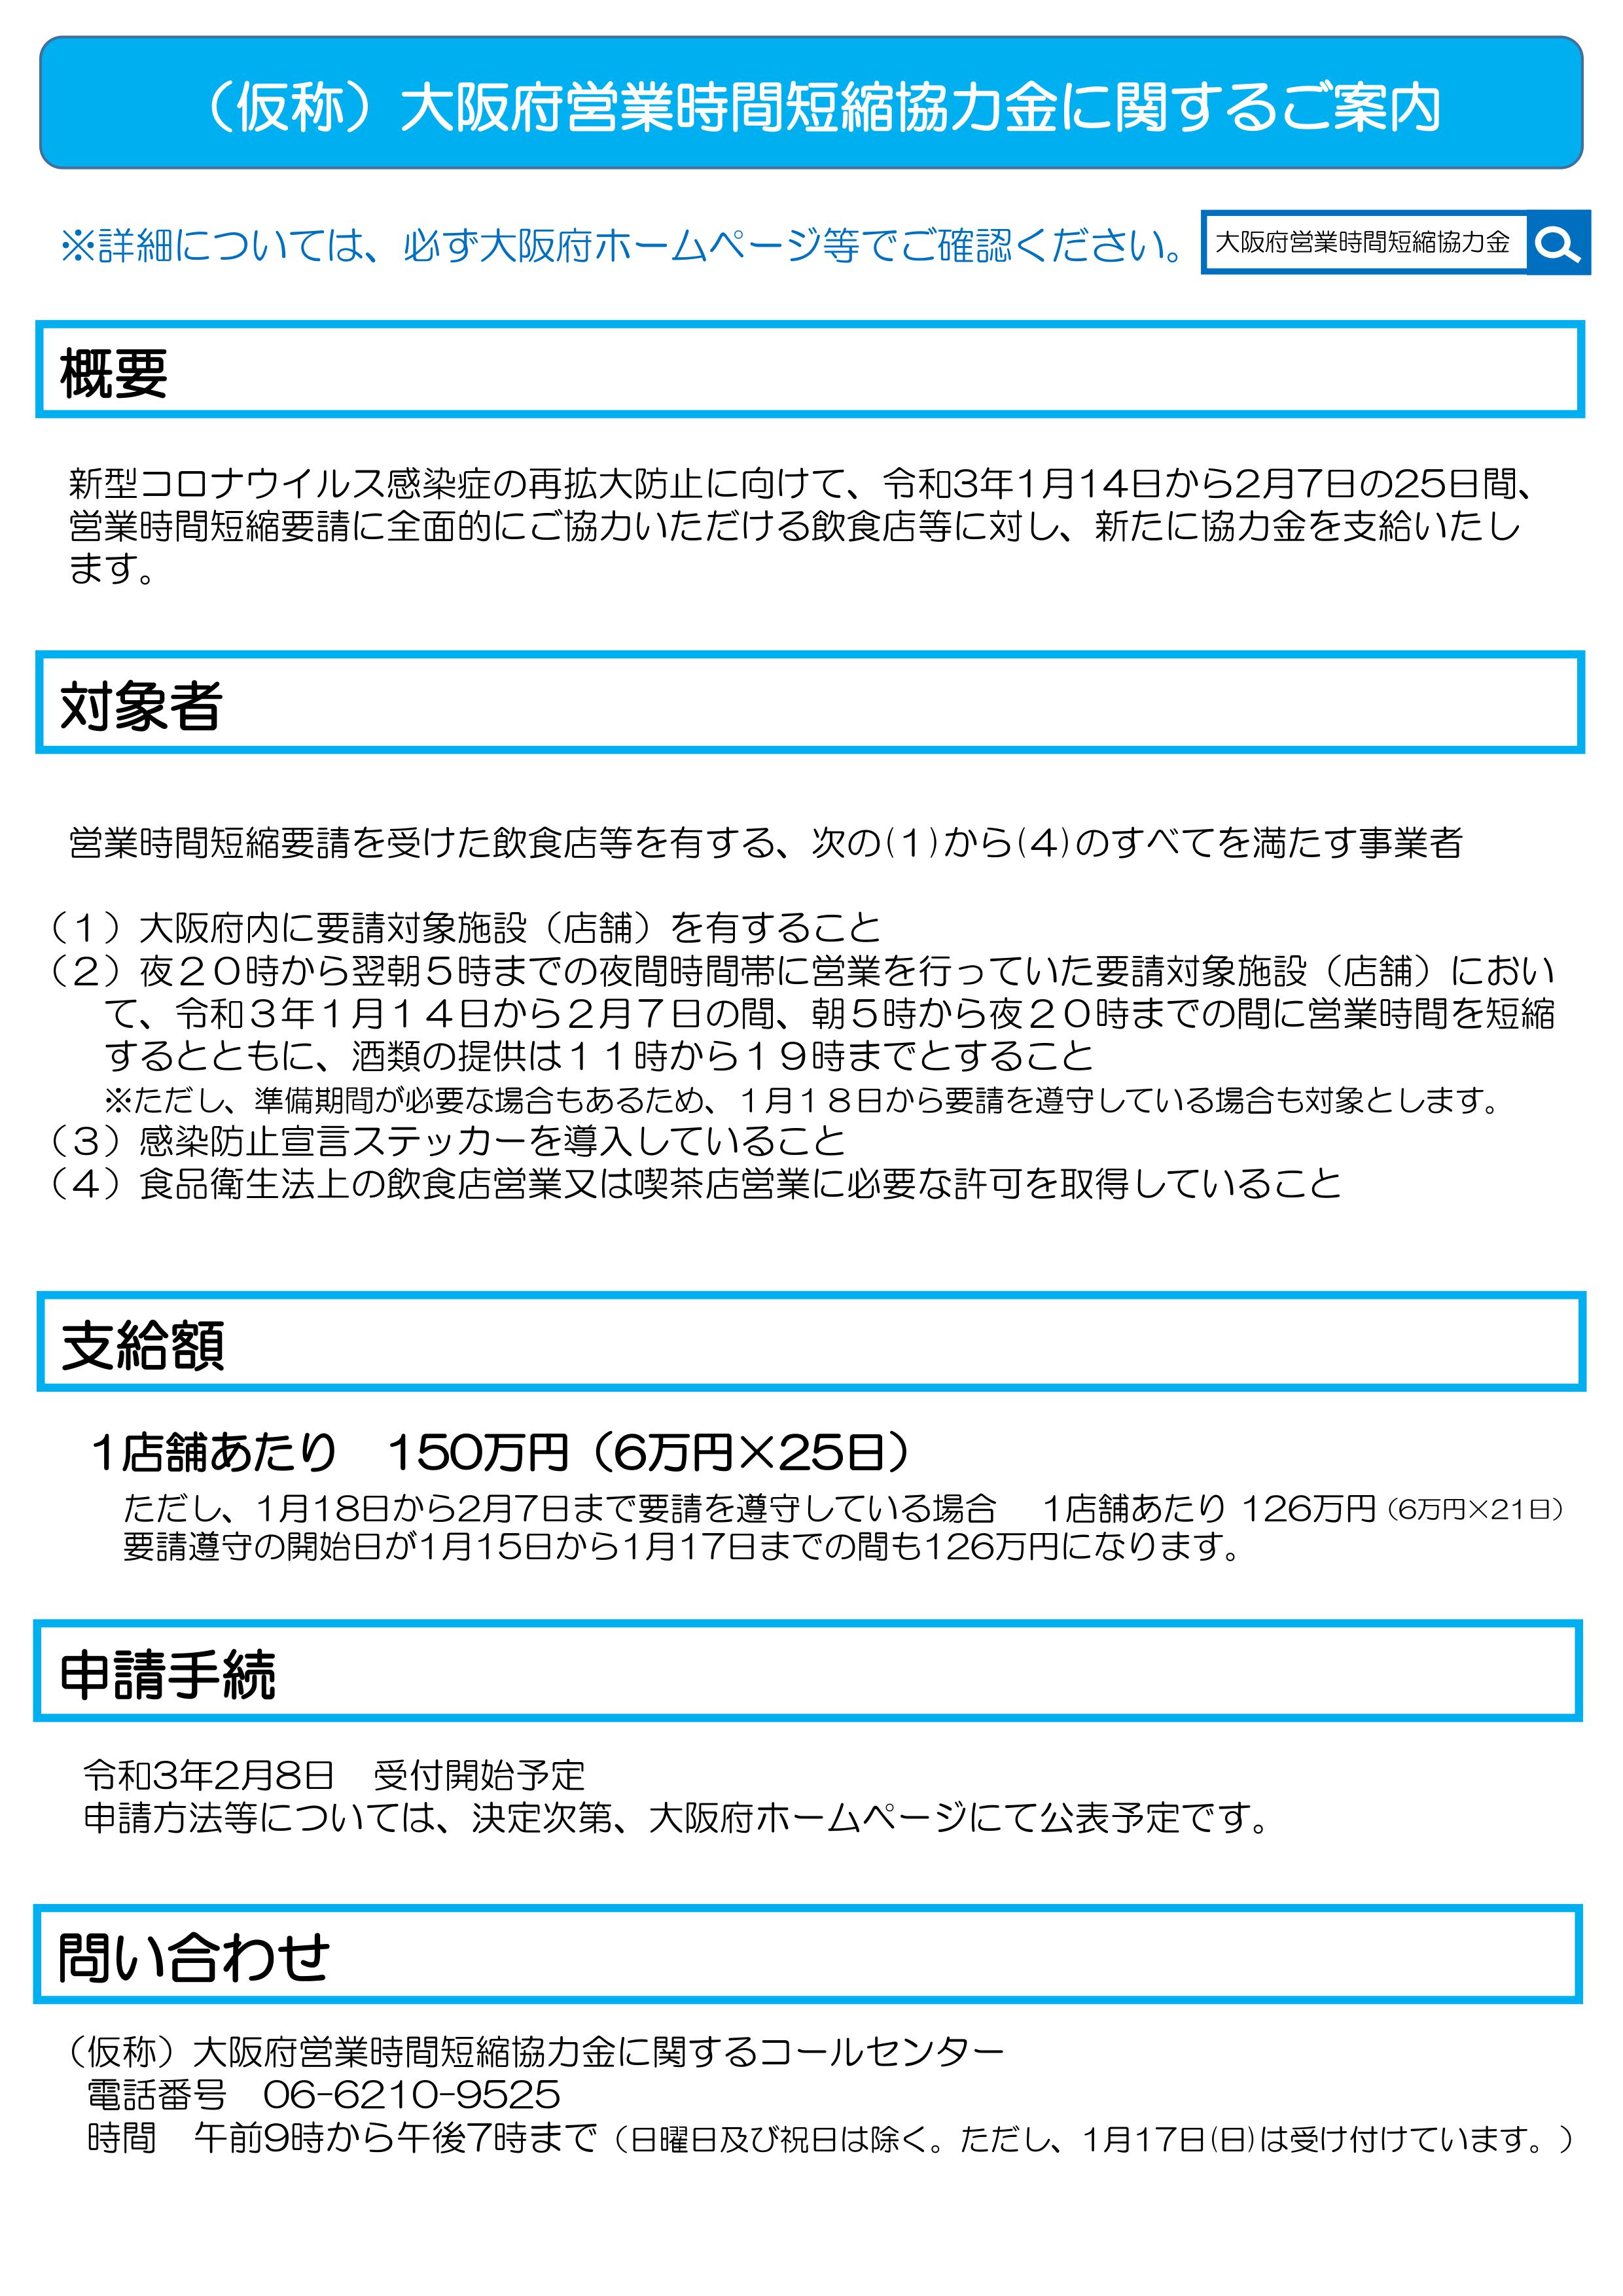 大阪 府 営業 時間 短縮 金 協力 金 申請 システム